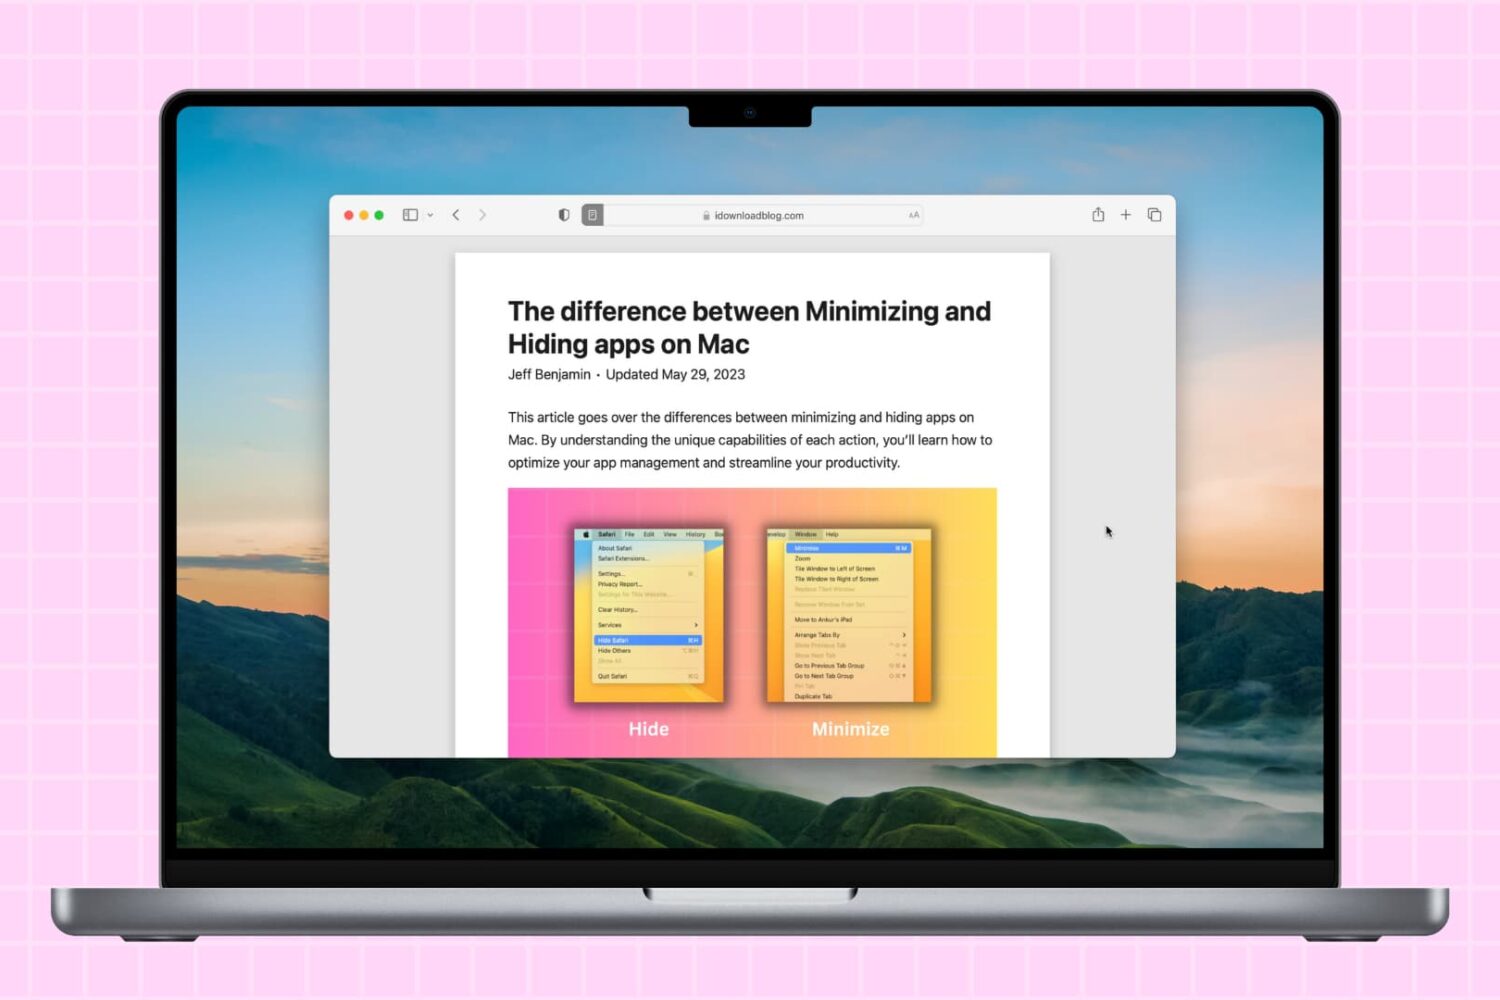 MacBook desktop with one app on the screen